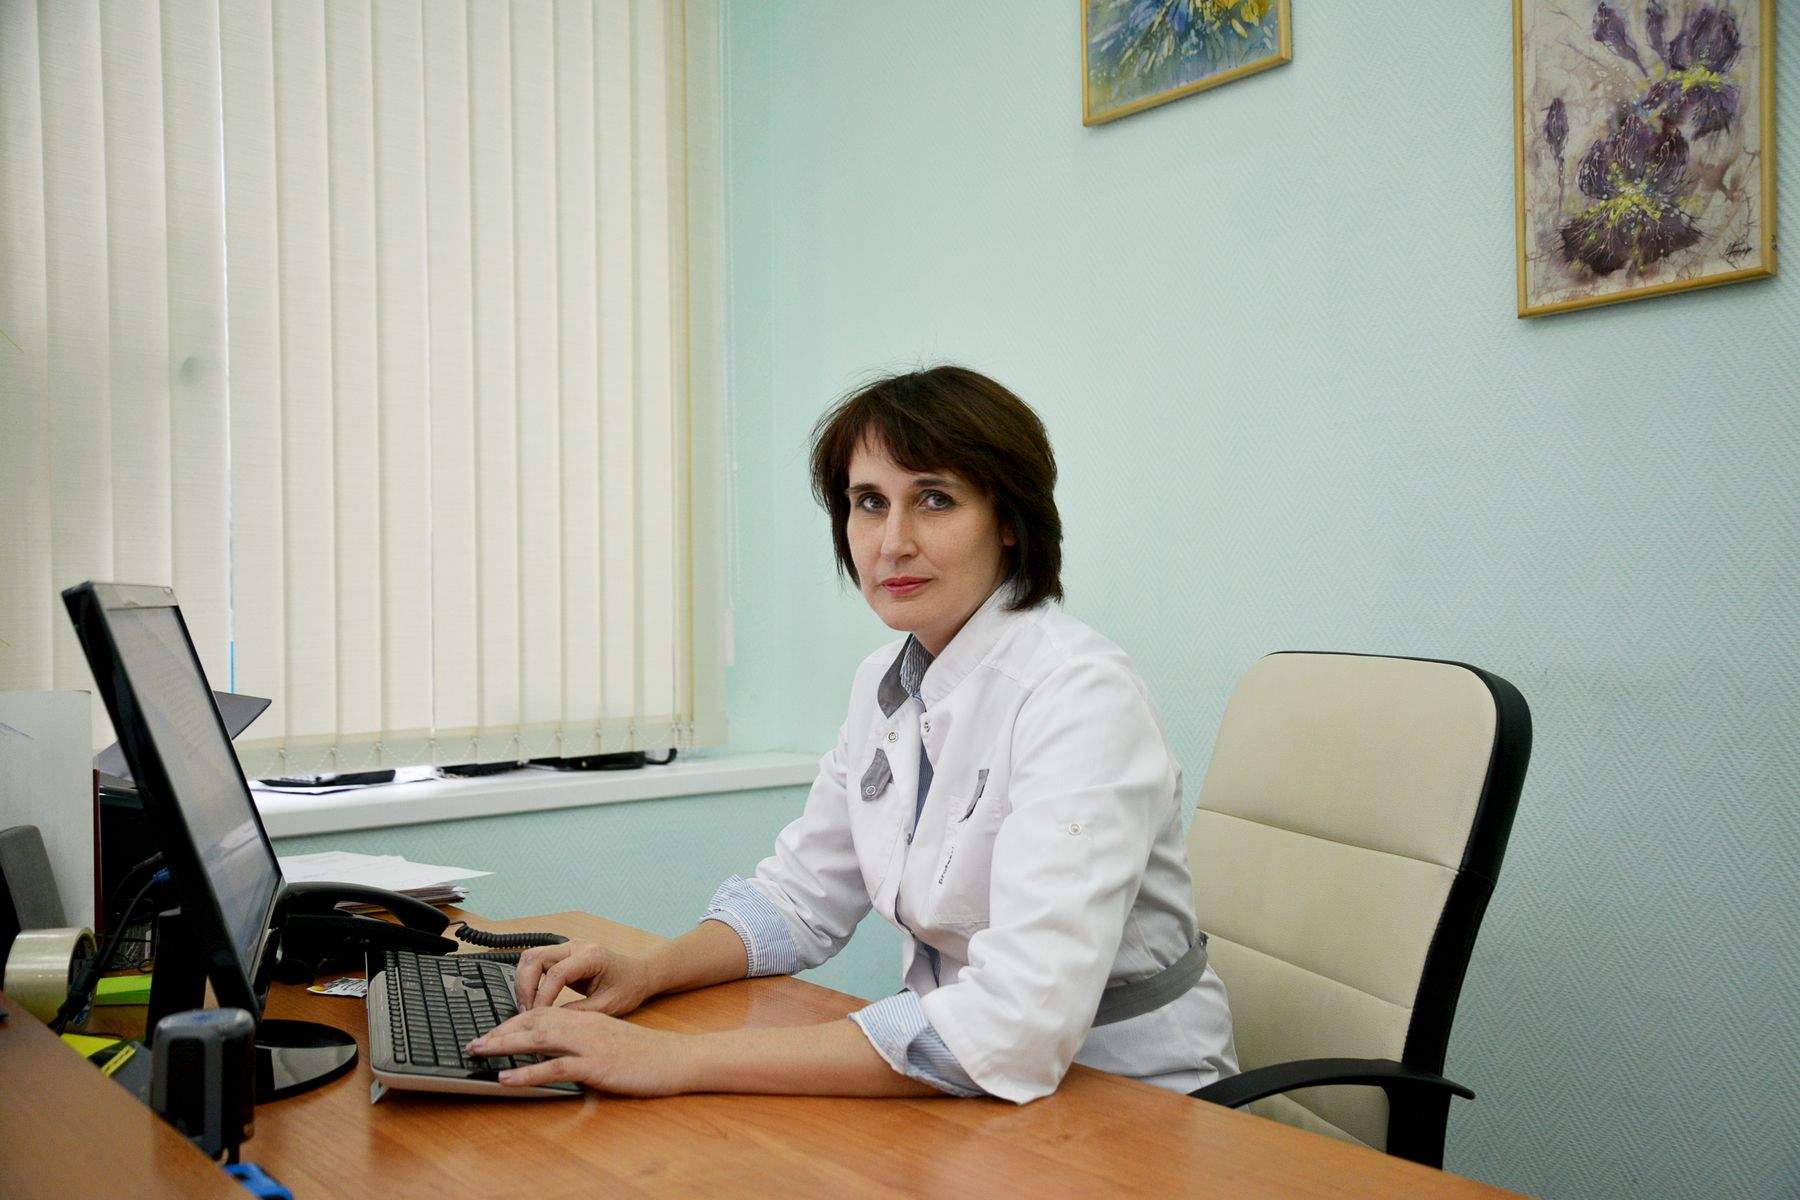 Лариса Смирнова, руководитель медицинского центра ВГУЭС: «Что необходимо знать о ВИЧ?»